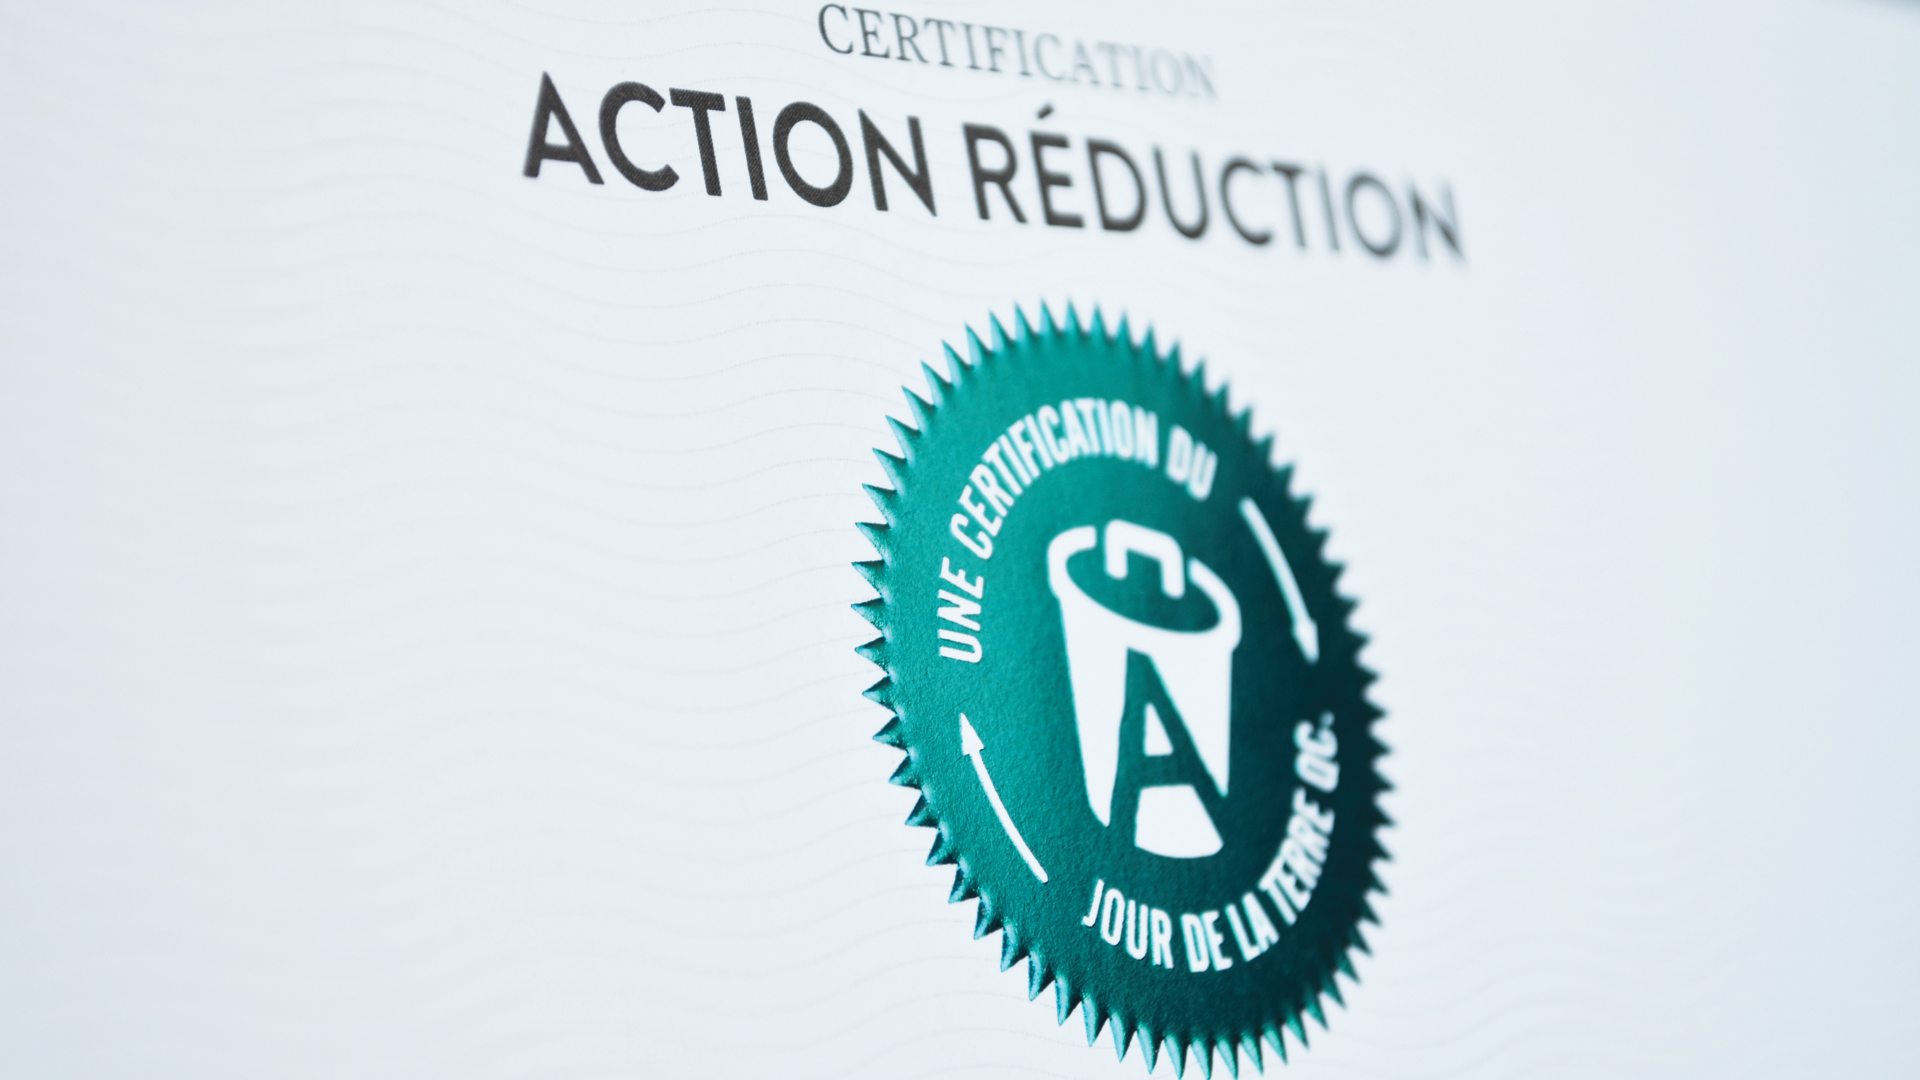 jour_de_la_terre_qc_quebec_certification_action_reduction